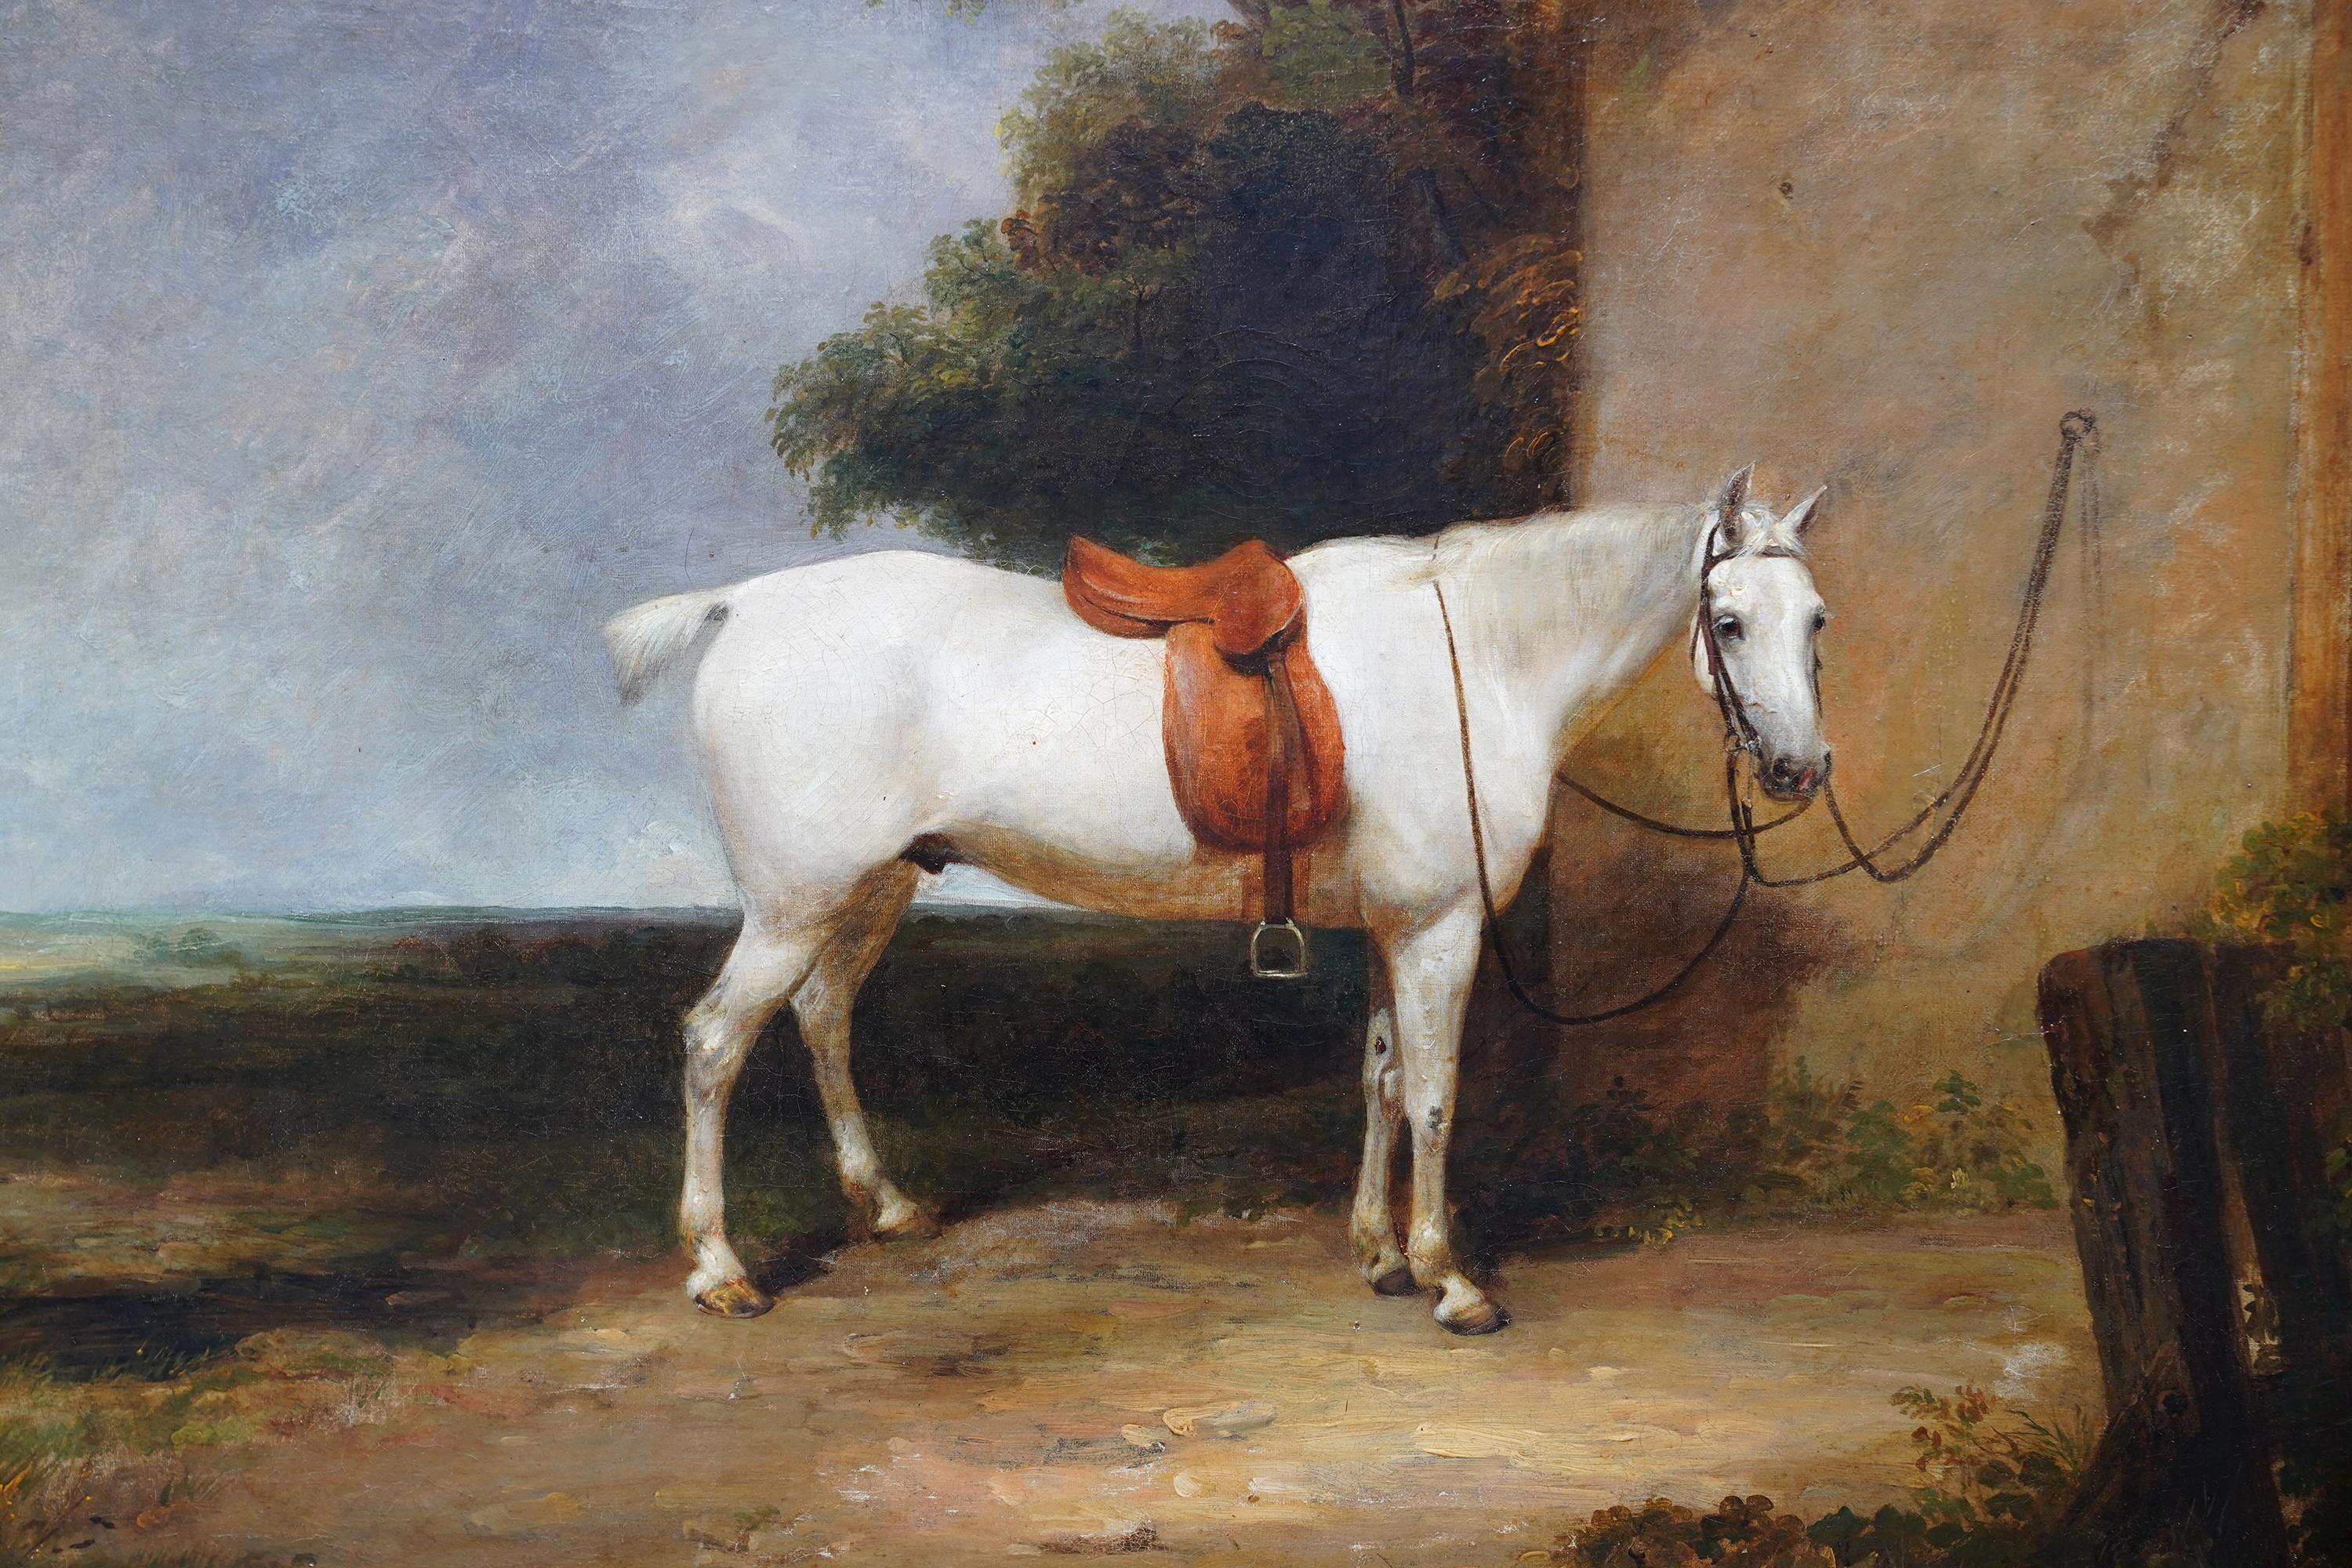 Cette ravissante peinture à l'huile britannique de style vieux maître est l'œuvre de Thomas Mogford d'Exeter, un artiste réputé né à Exeter. Peint en 1834, il représente un cheval de chasse blanc au premier plan, à côté d'un bâtiment et d'un